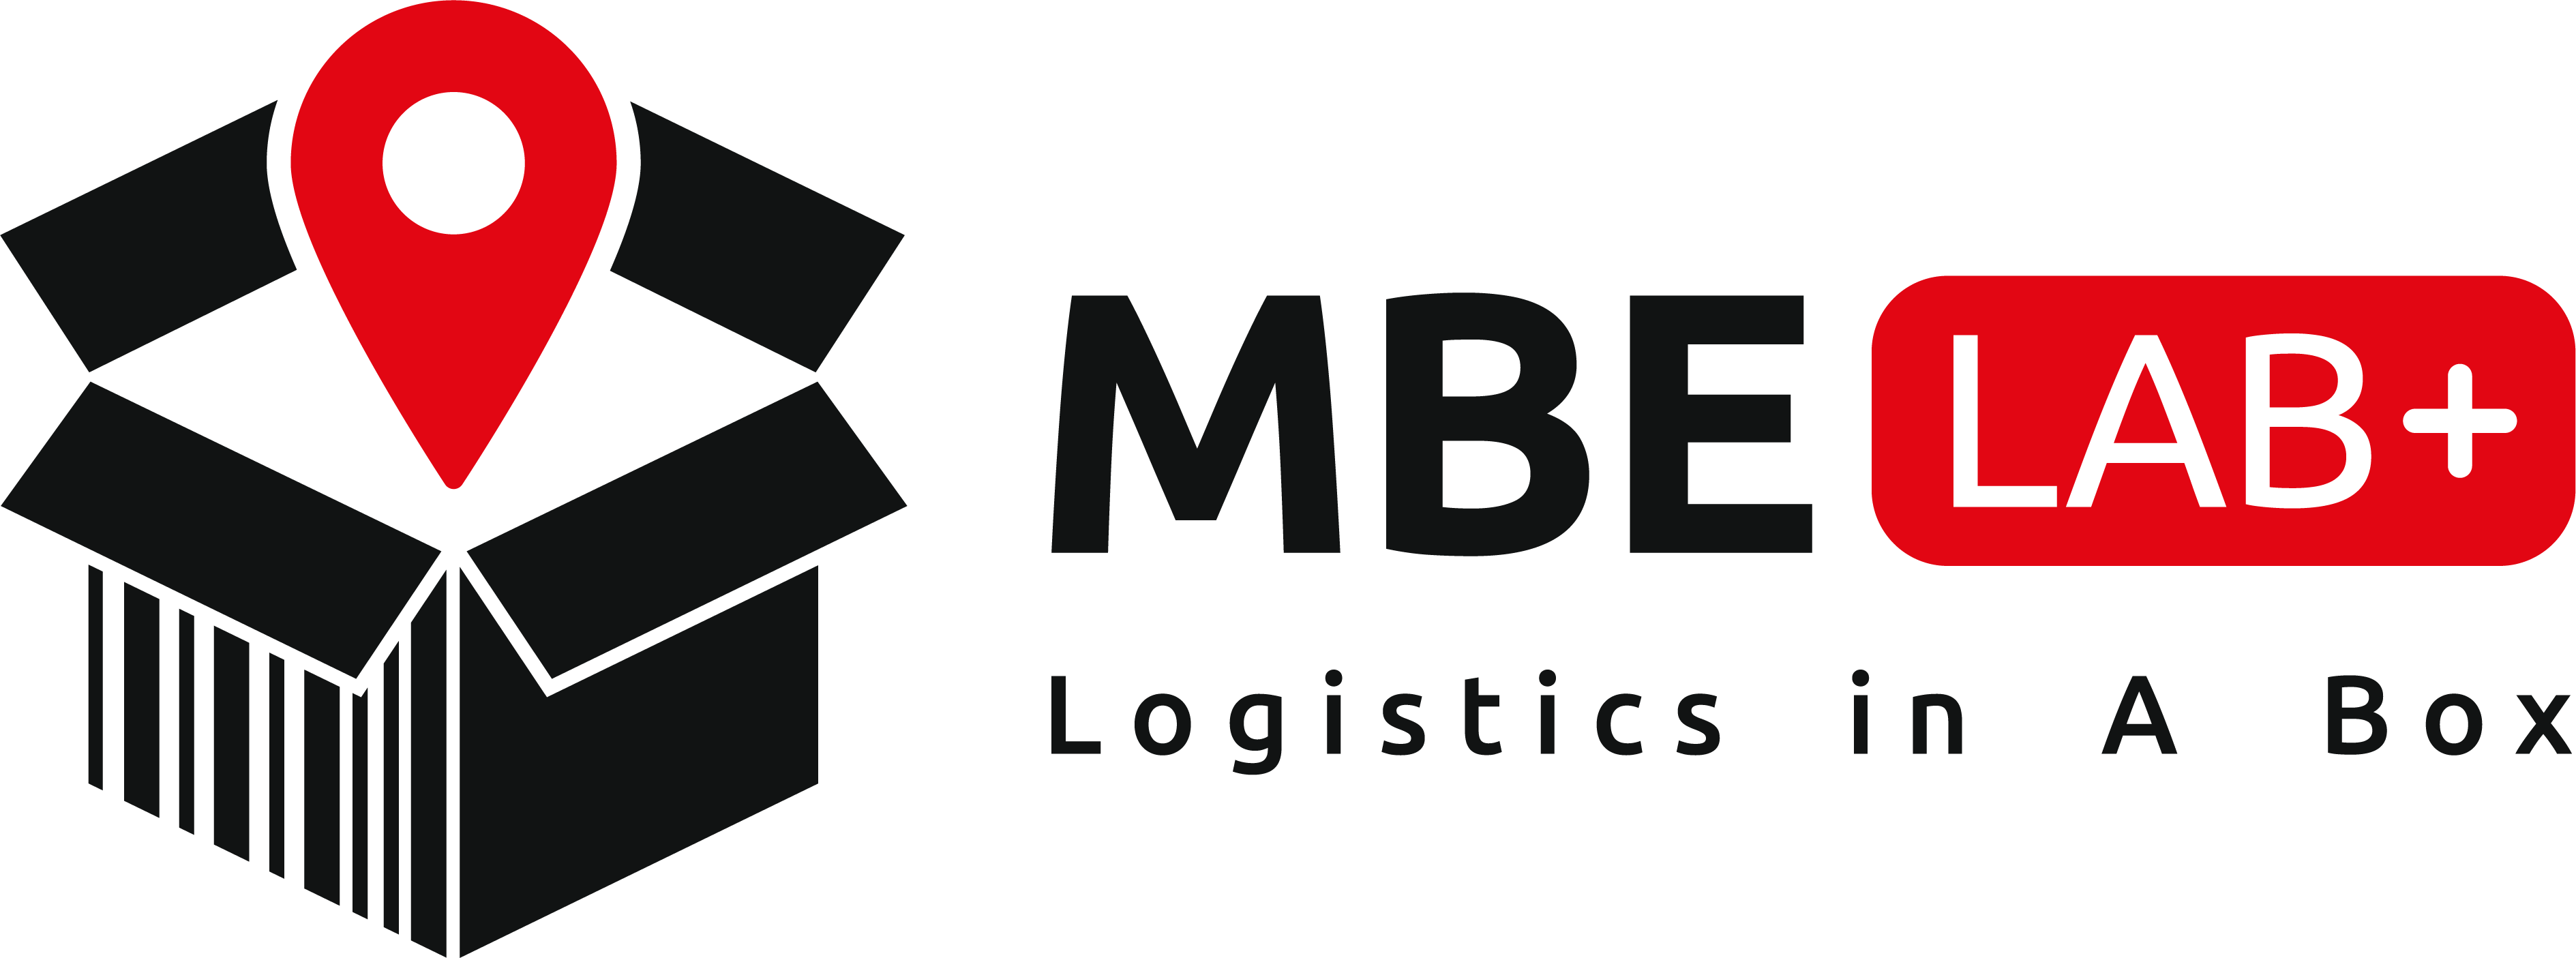 MBE LAB+ Logo png